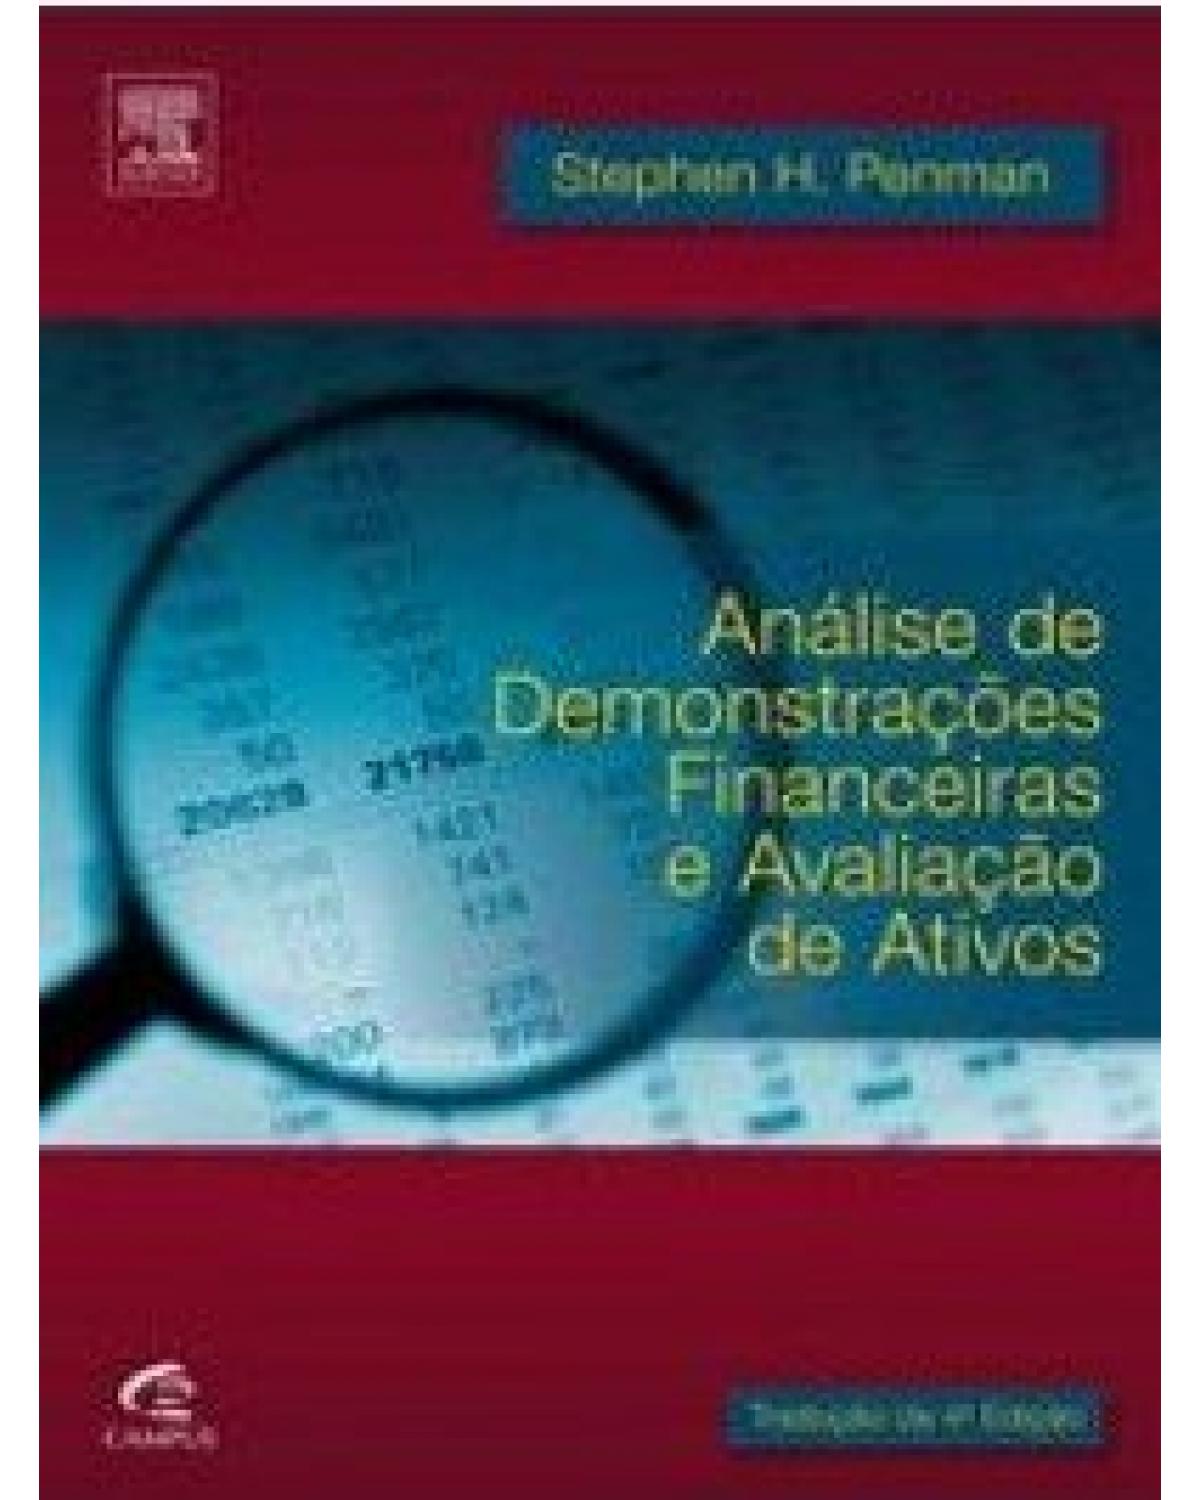 Análise de demonstrações financeiras e avaliação de ativos - 1ª Edição | 2013